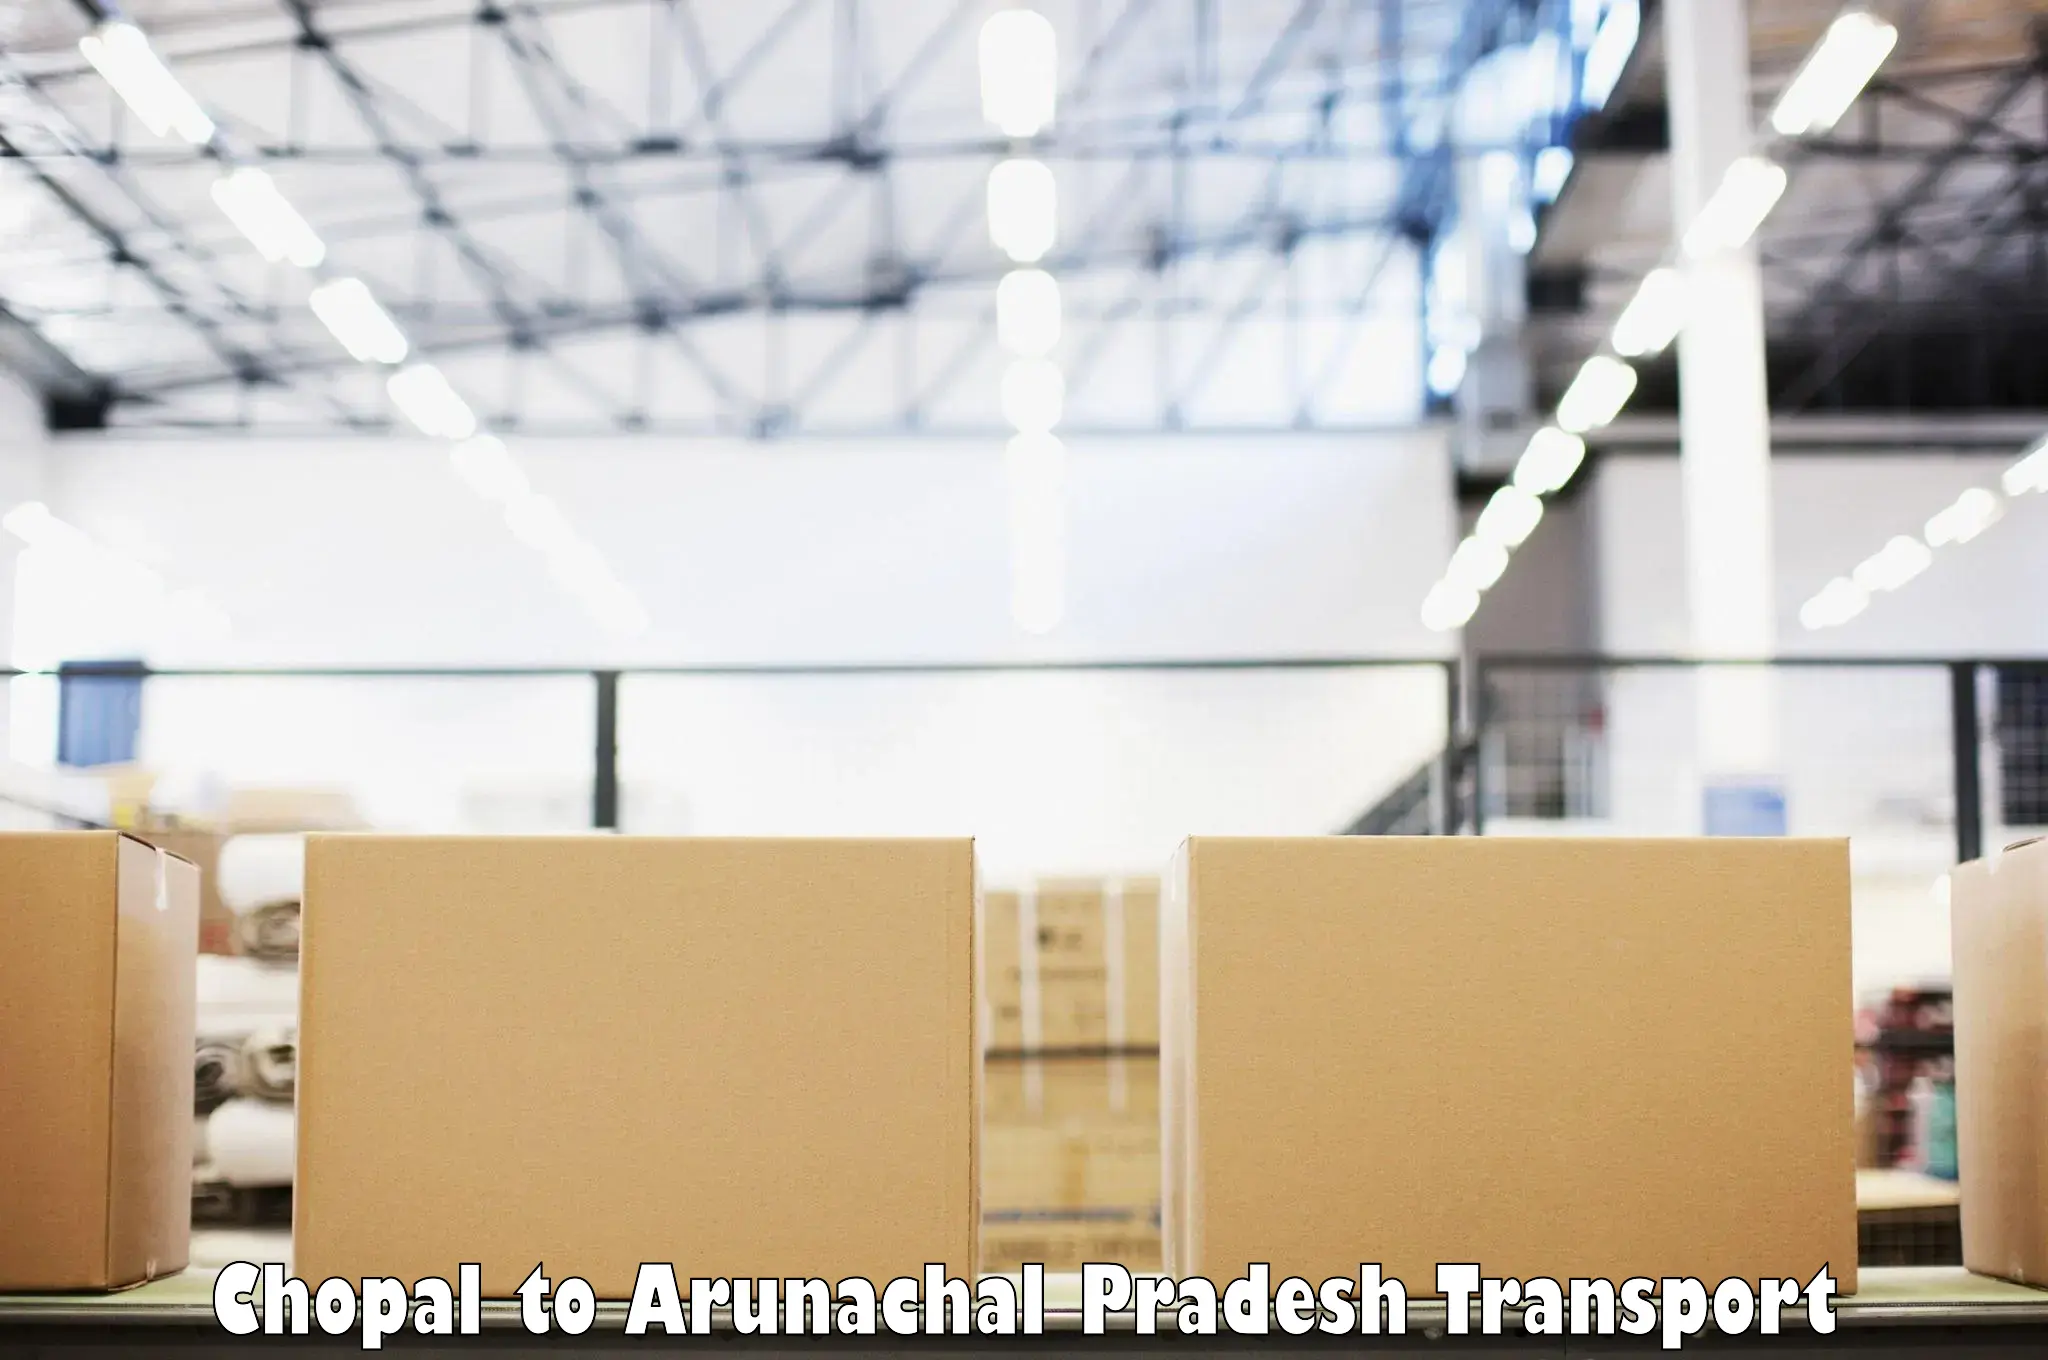 Container transport service Chopal to Arunachal Pradesh